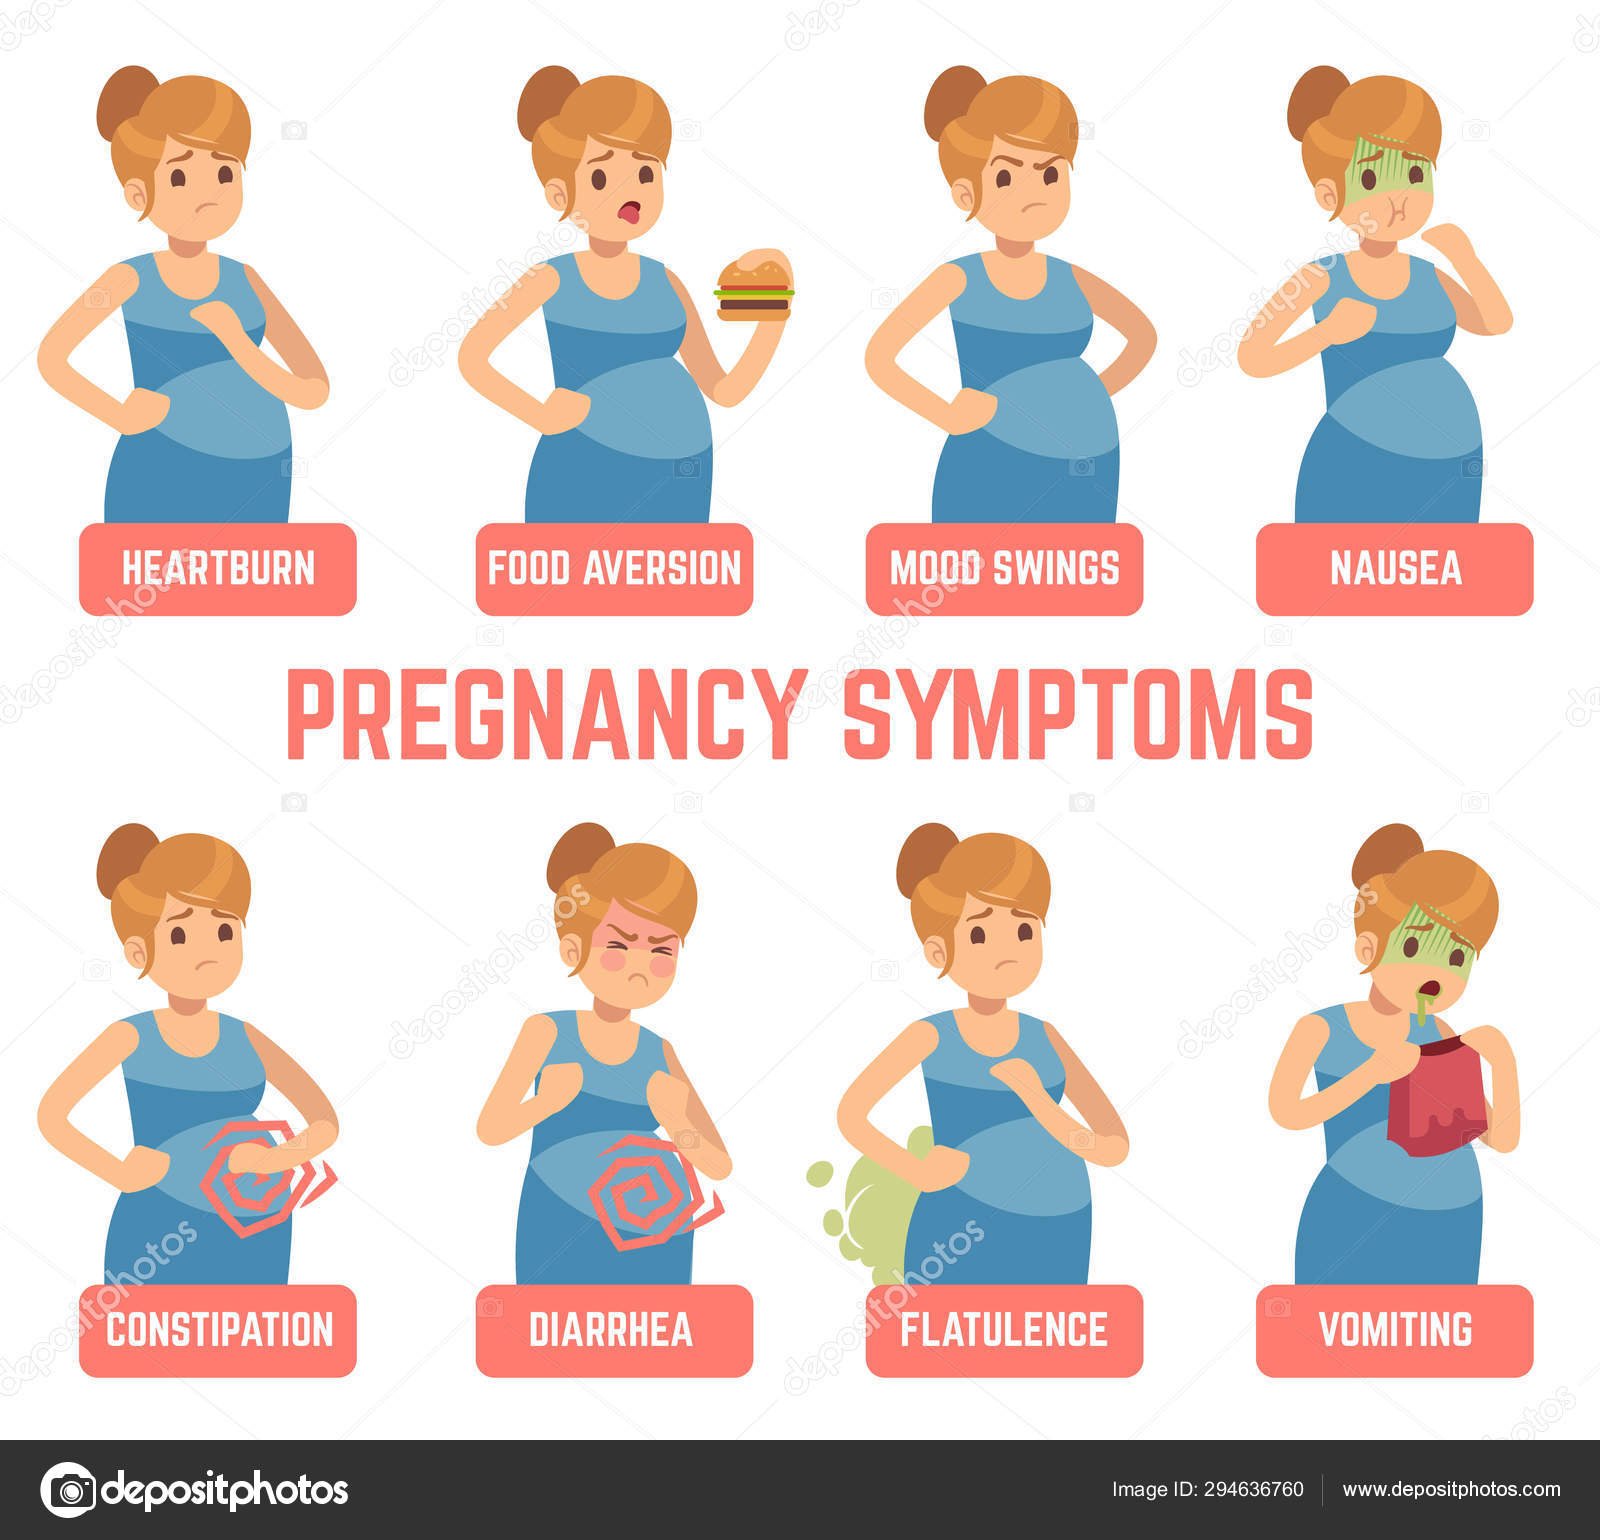 Pregnancy symptoms. Early signs pregnant woman change ...